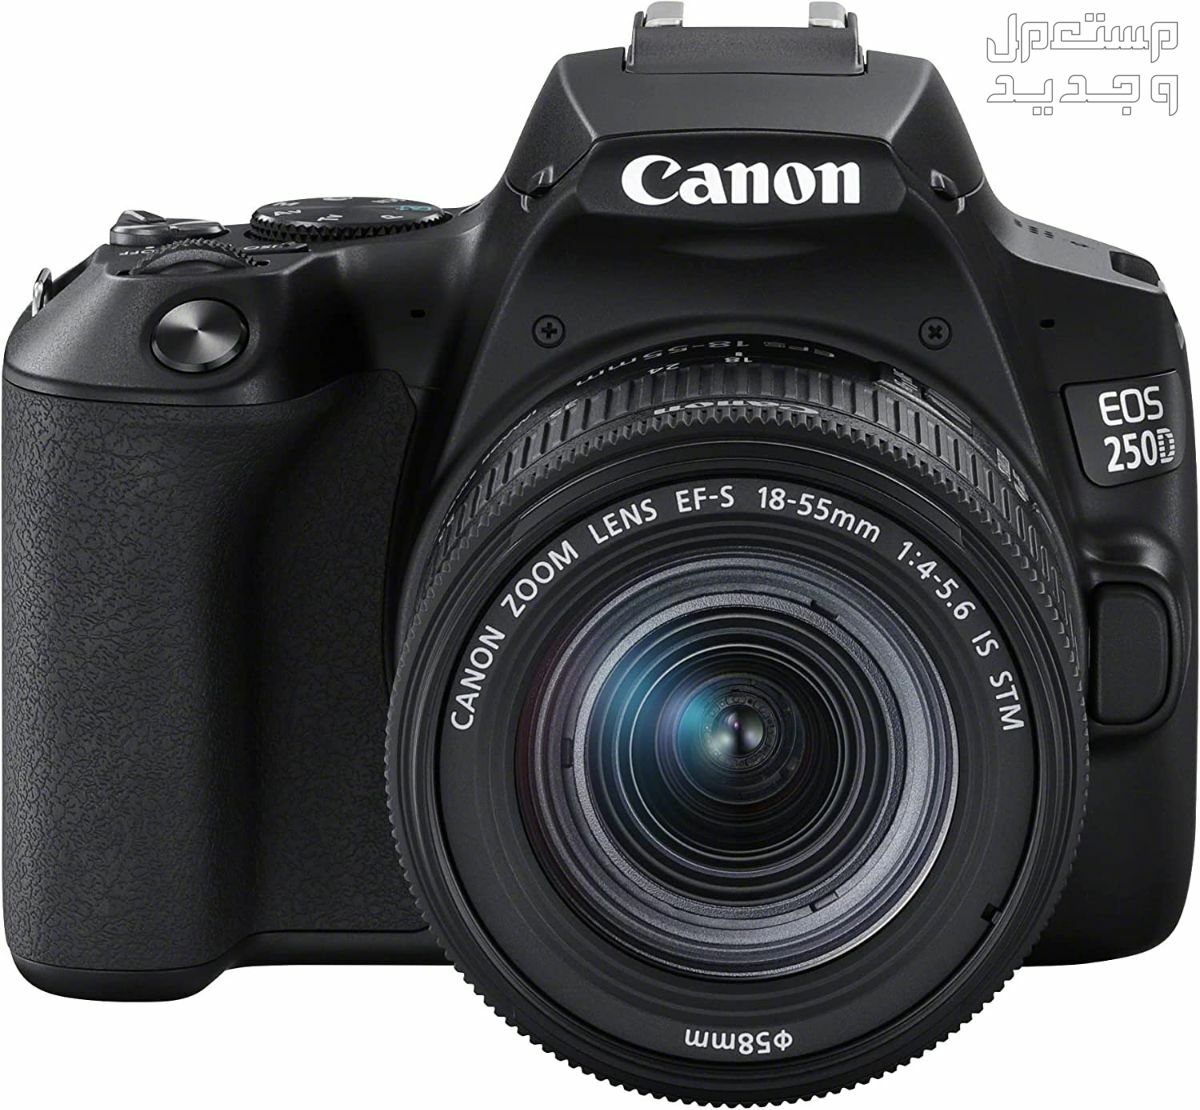 سعر ومميزات ومواصفات أرخص 5 كاميرات تصوير من كانون في مصر مميزات كاميرا Canon EOS 250D